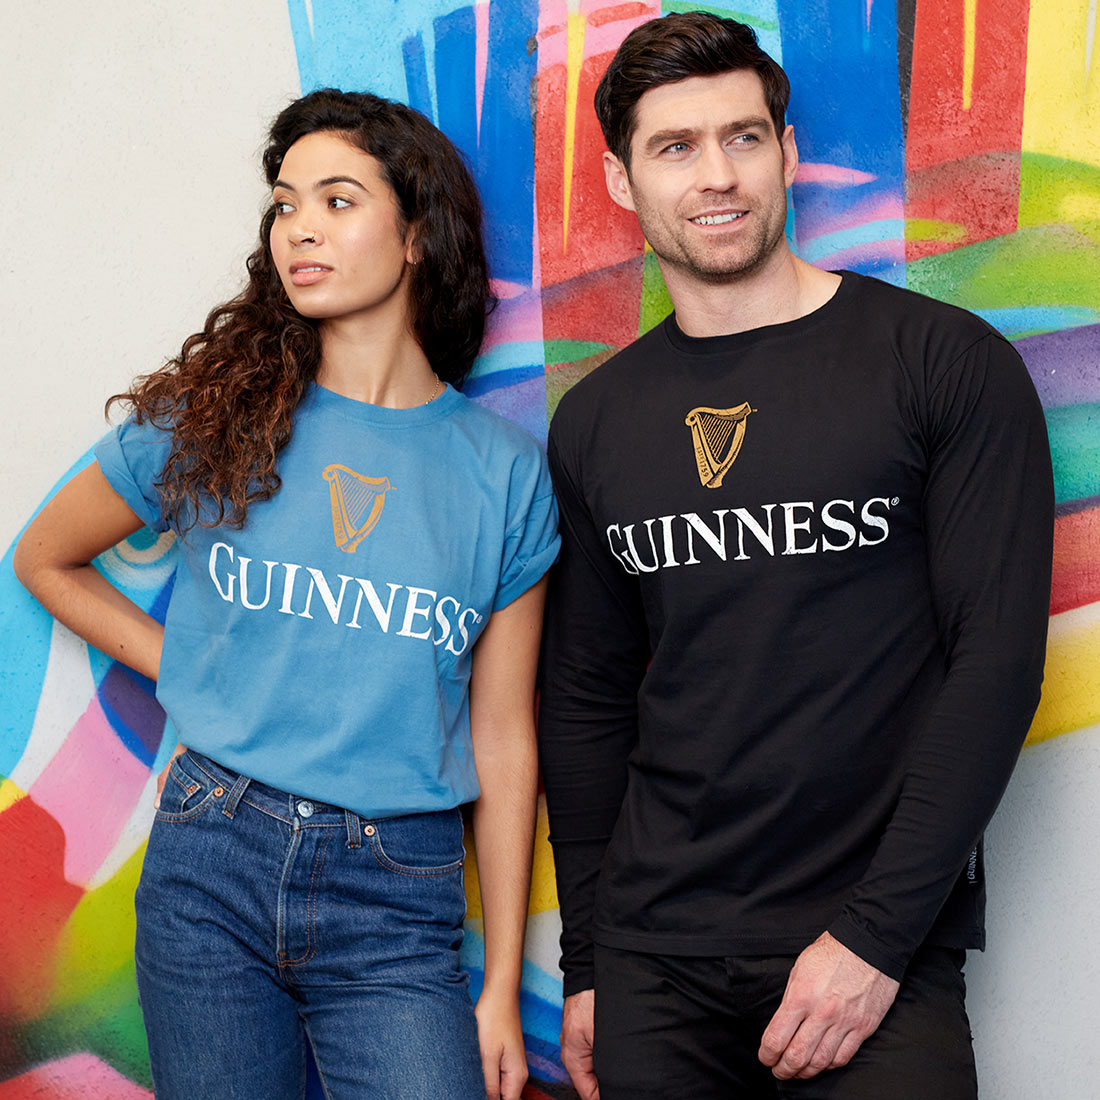 Guinness Black Trademark Label Long Sleeve T-Shirt